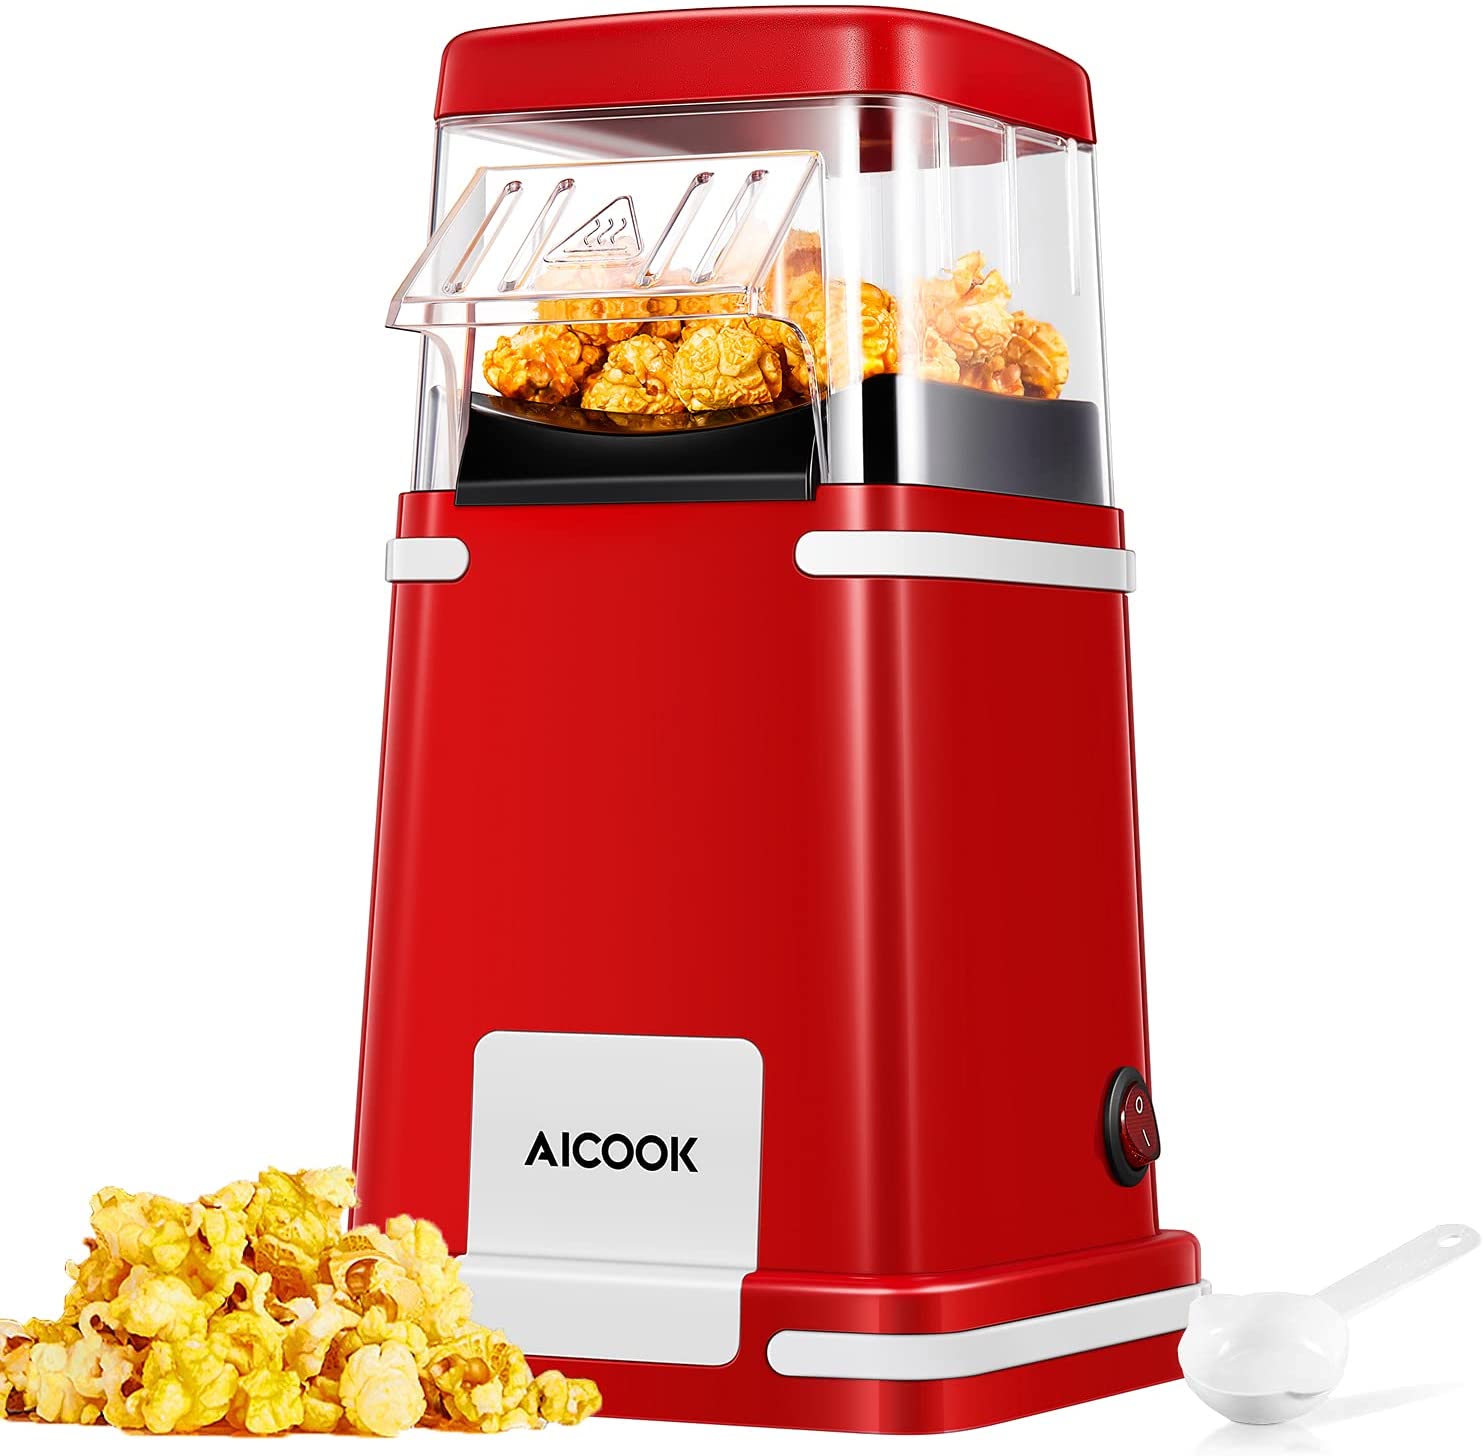 Air Popcorn Popper Maker, Electric Hot Air Popcorn Machine-1200W, Oil-Free